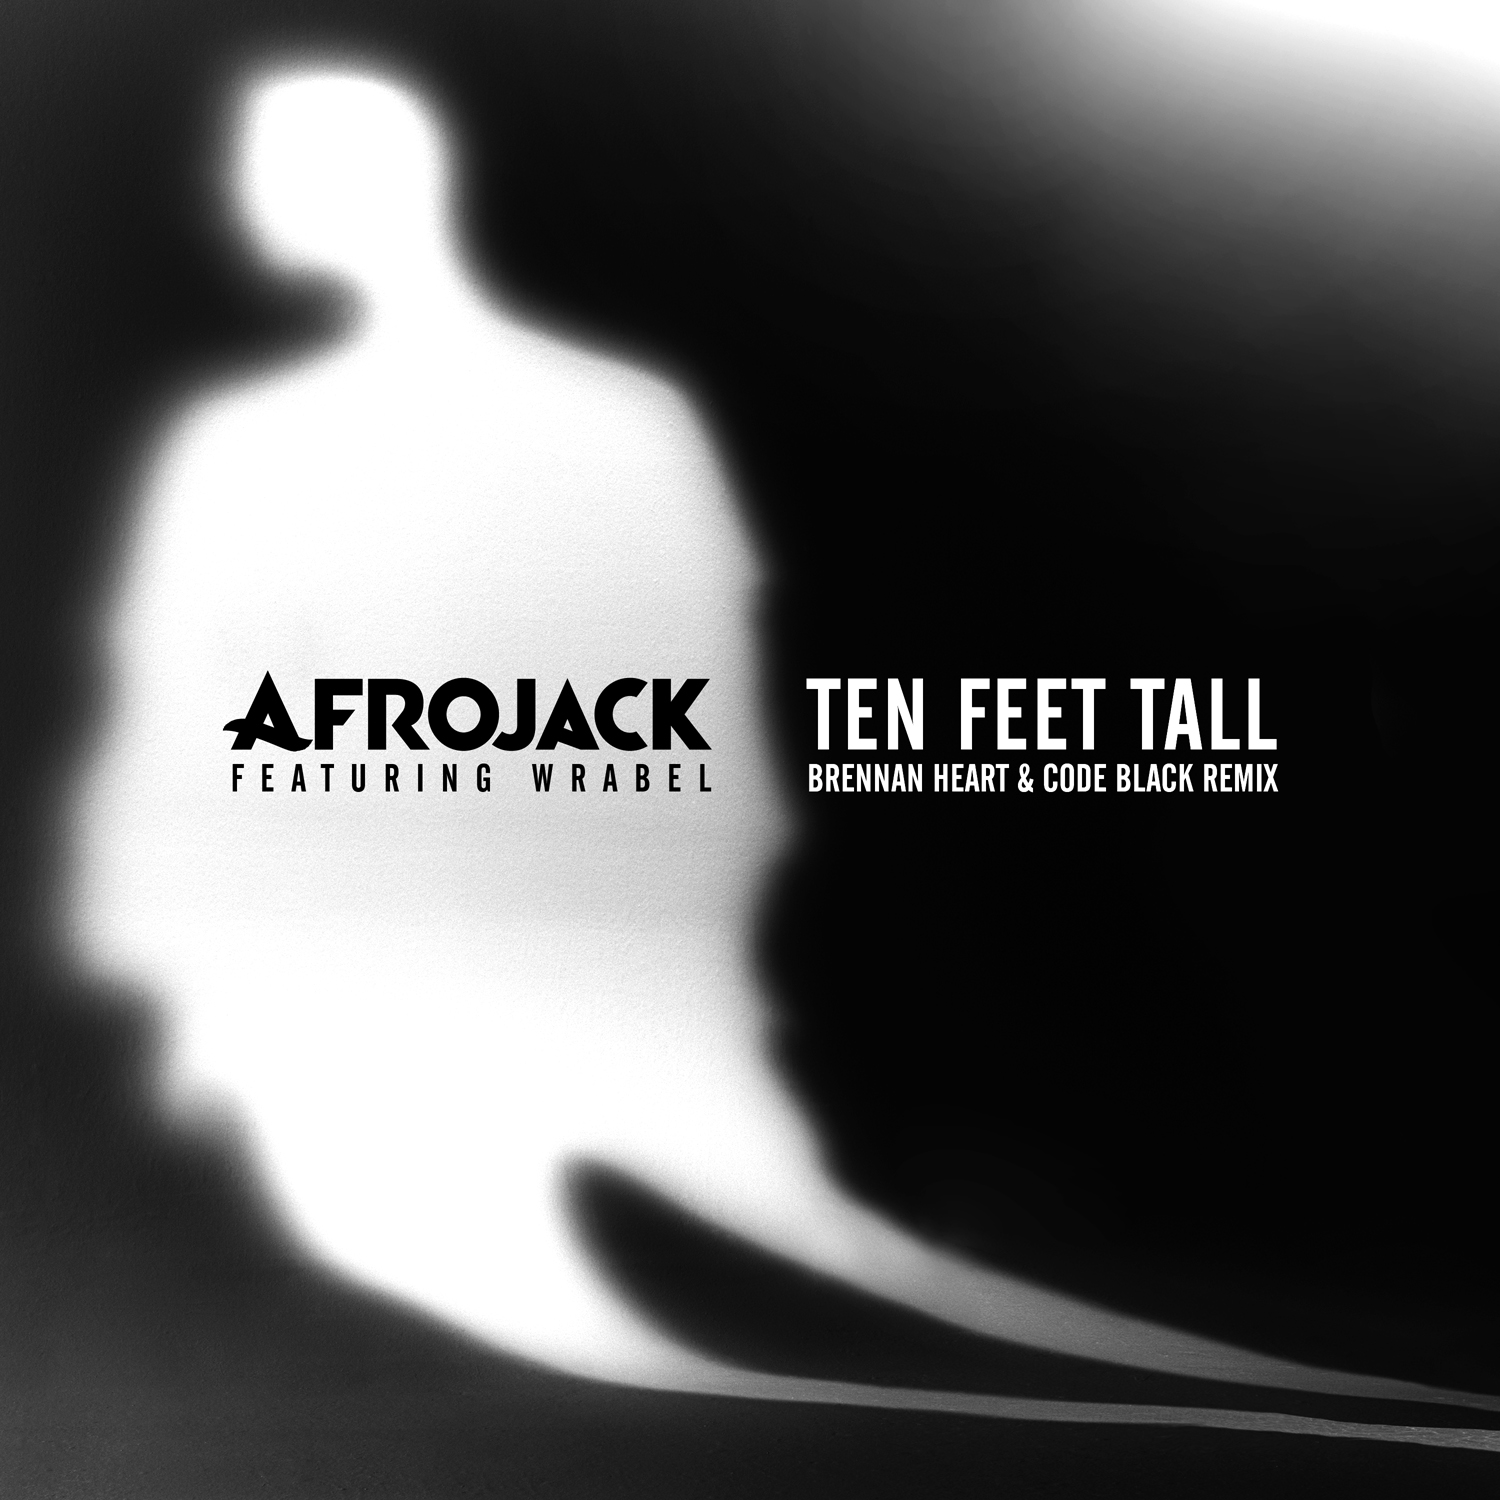 Ten-Feet-Tall-Brennan-Heart-Code-Black-Remix-1.jpg